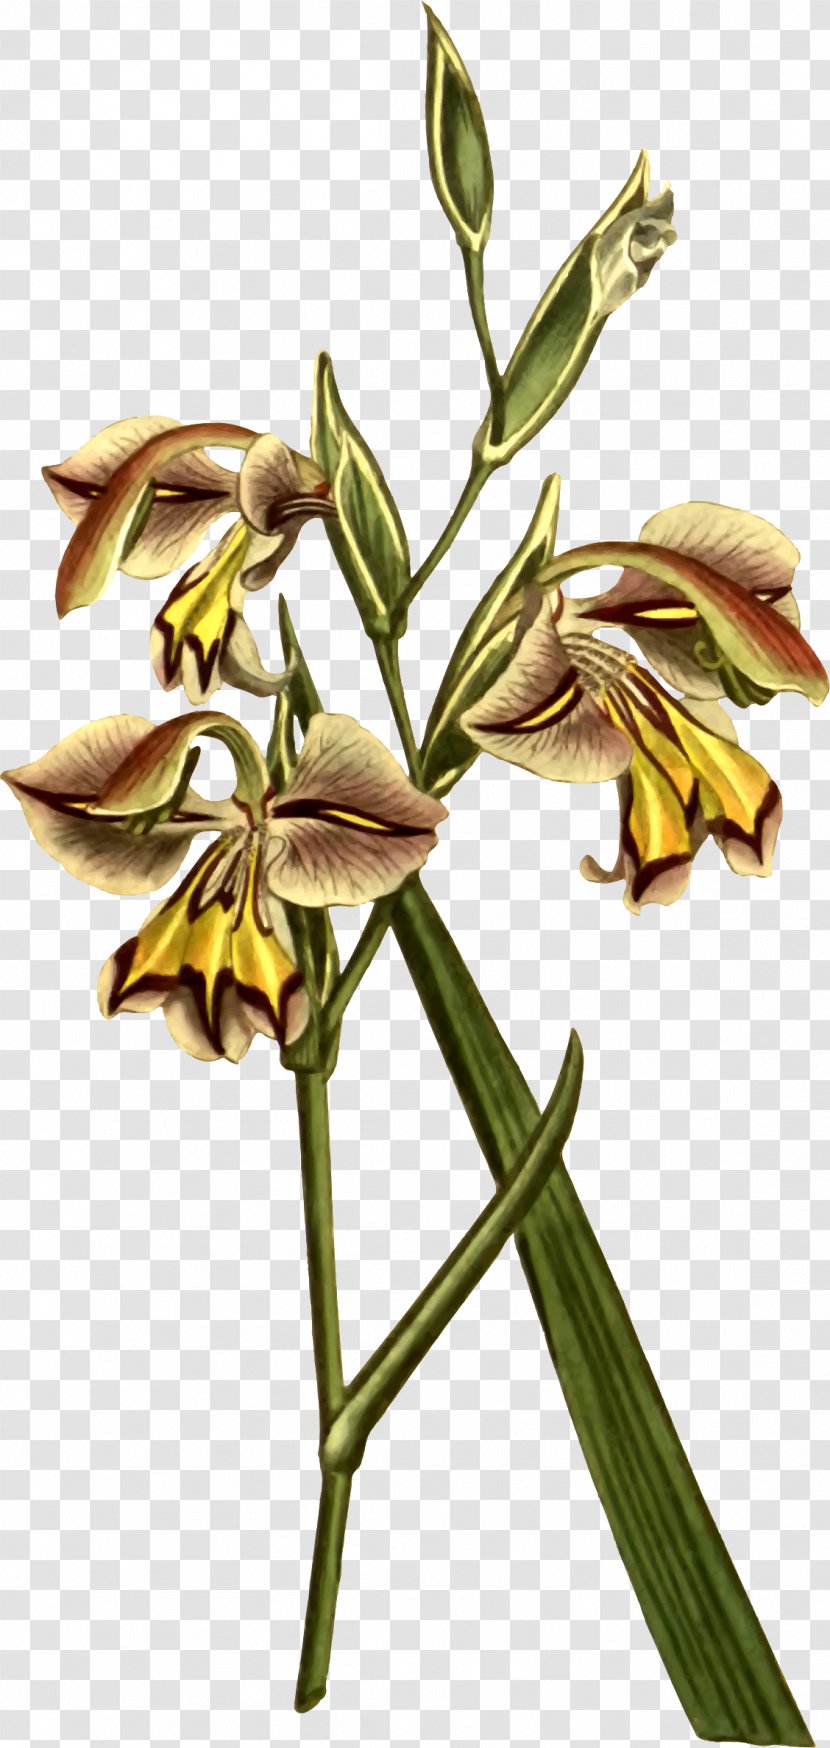 Flowering Plant Stem - Flower - Corn Leaves Transparent PNG